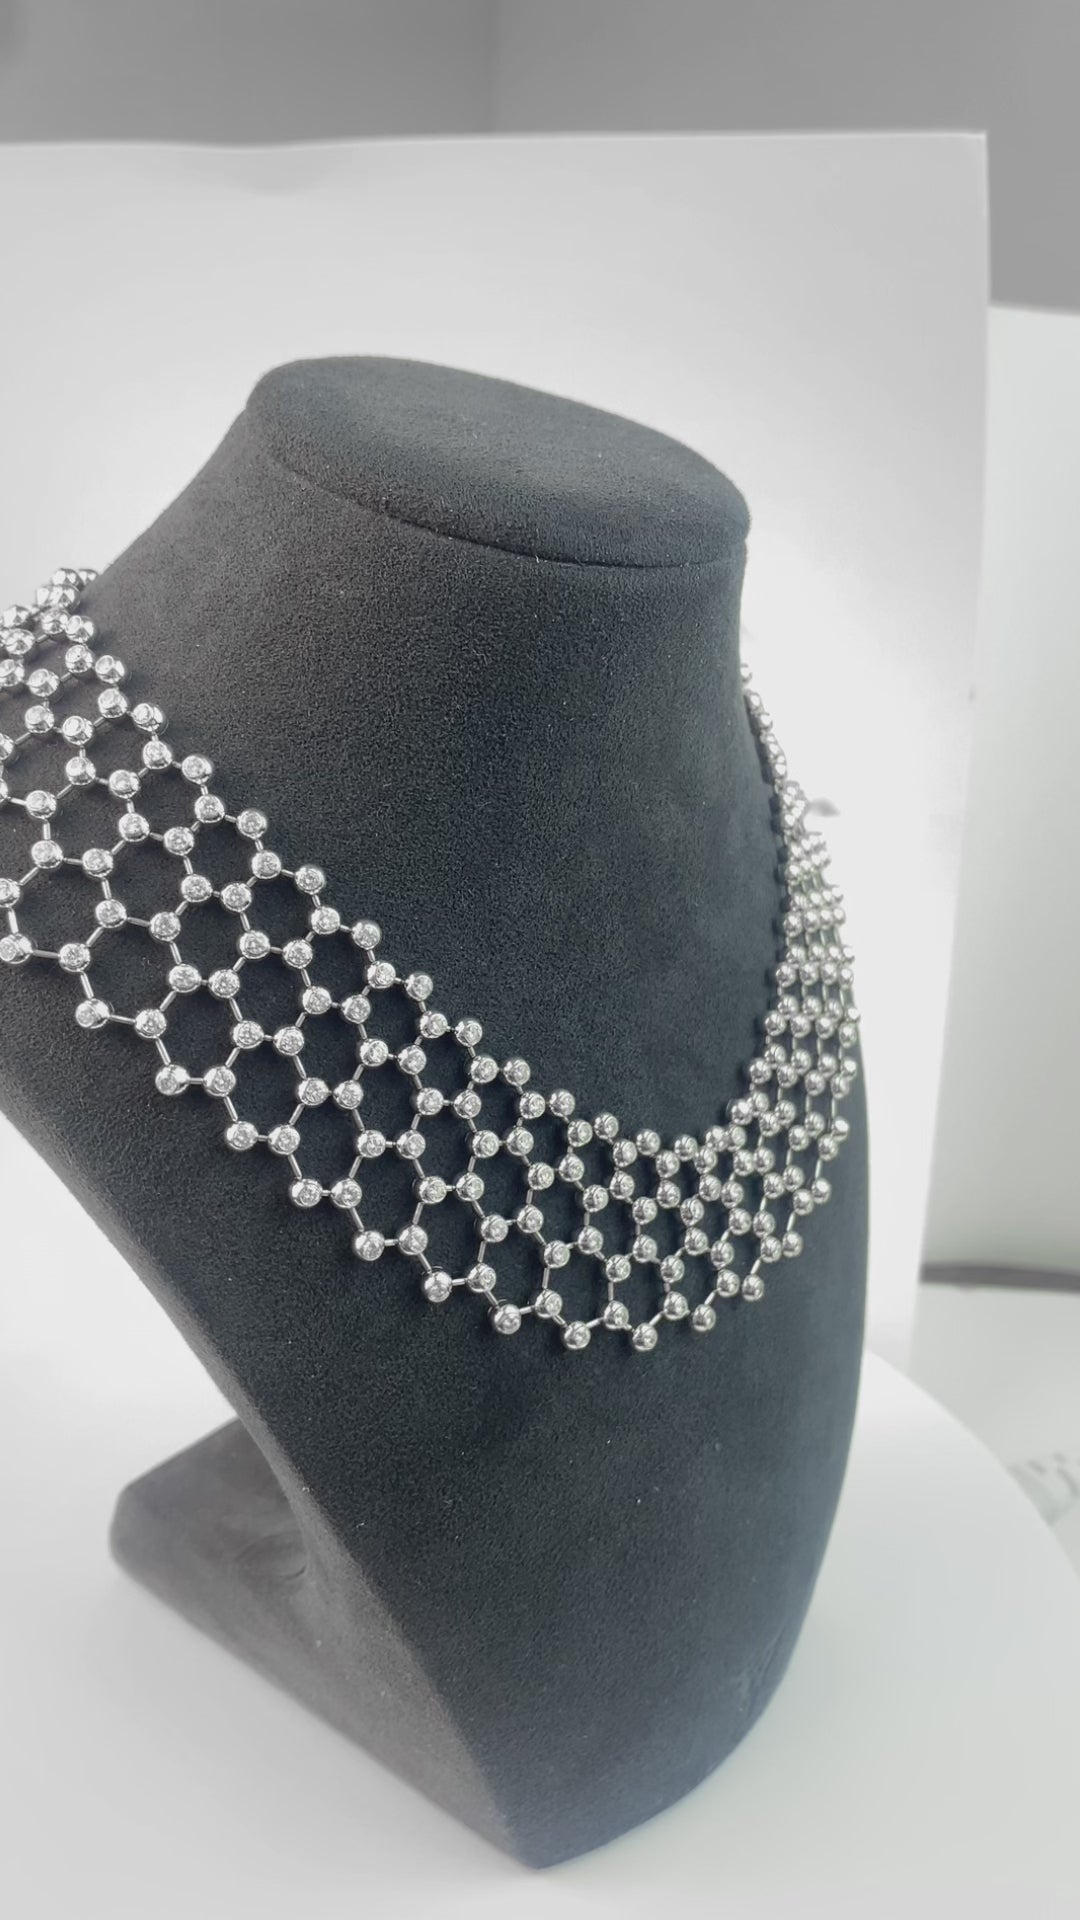 Cartier 18K White Gold Diamond "Perles de Diamants" Necklace